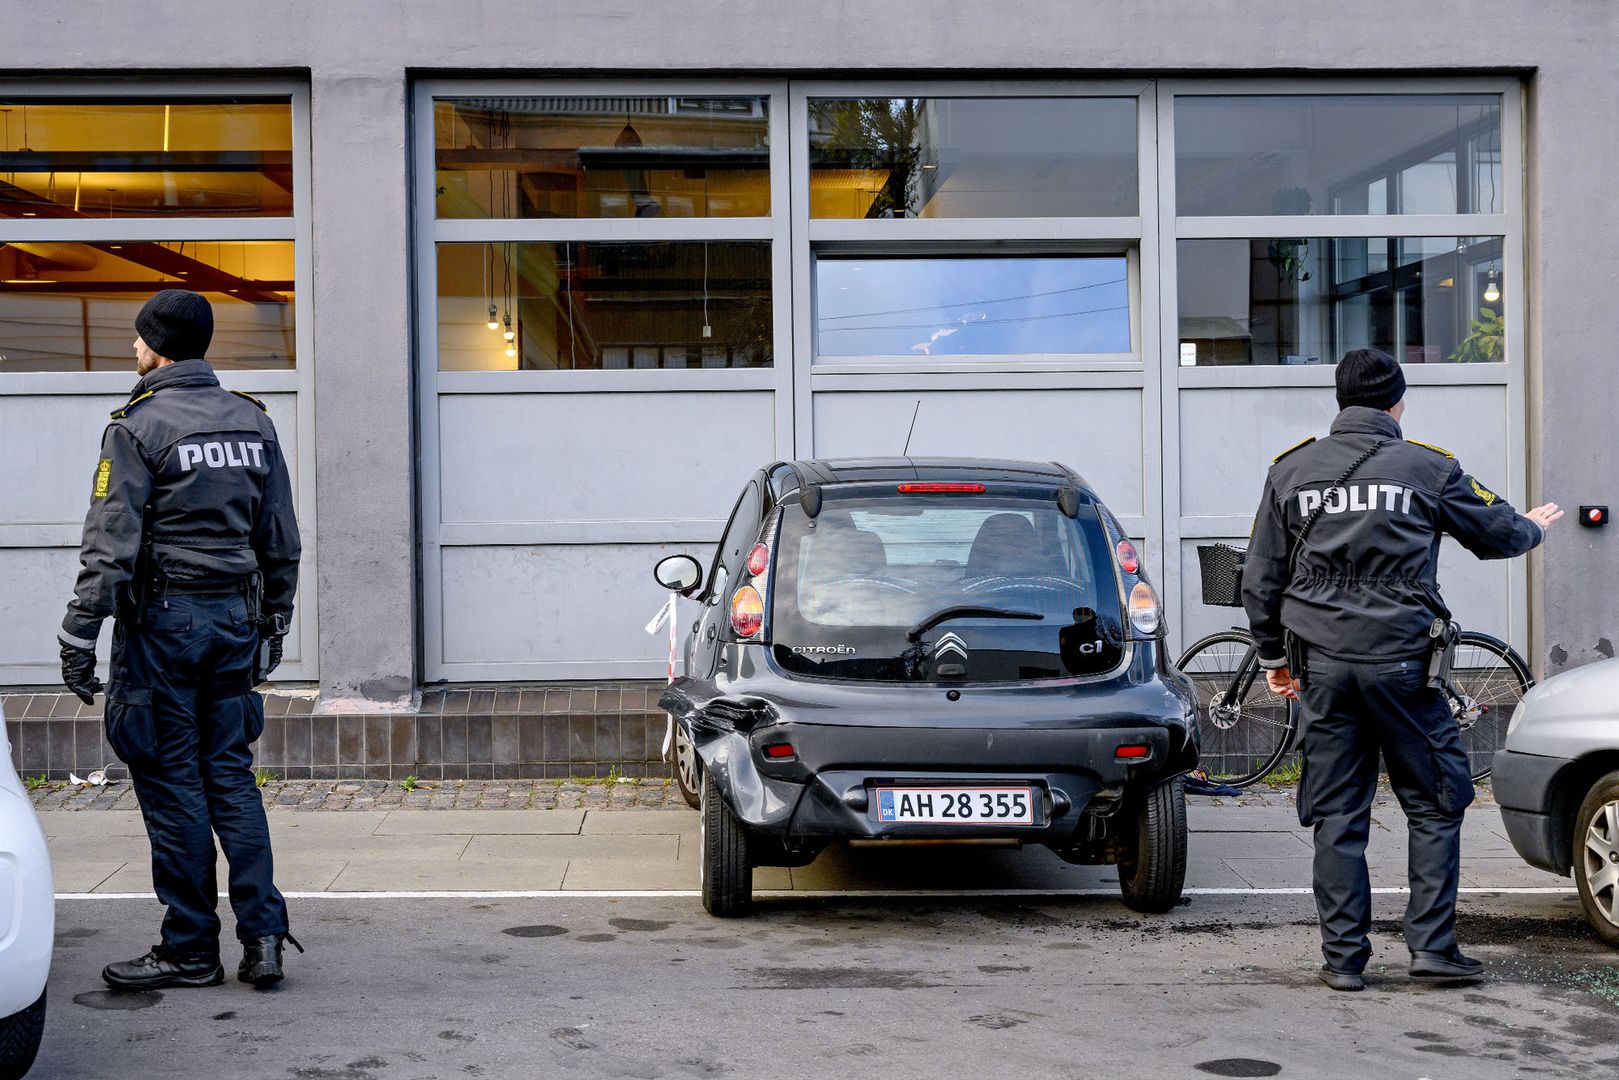 Jedna osoba nie żyje, trzy osoby są ranne. To bilans ataku nożownika w centrum Kopenhagi